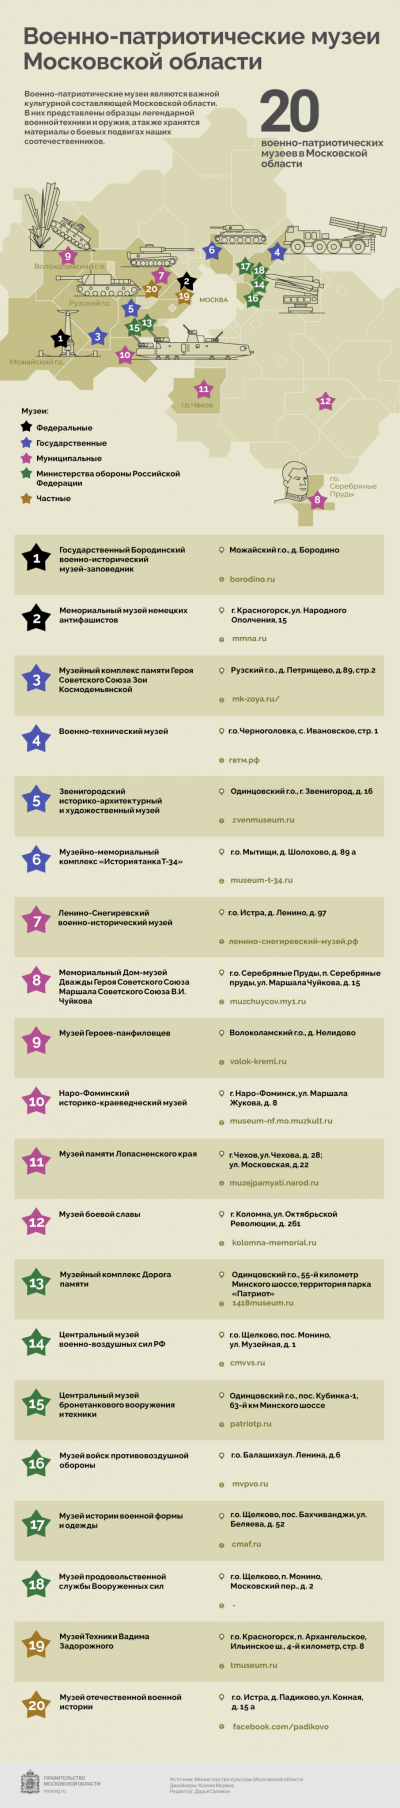 Военно-патриотические музеи Московской области